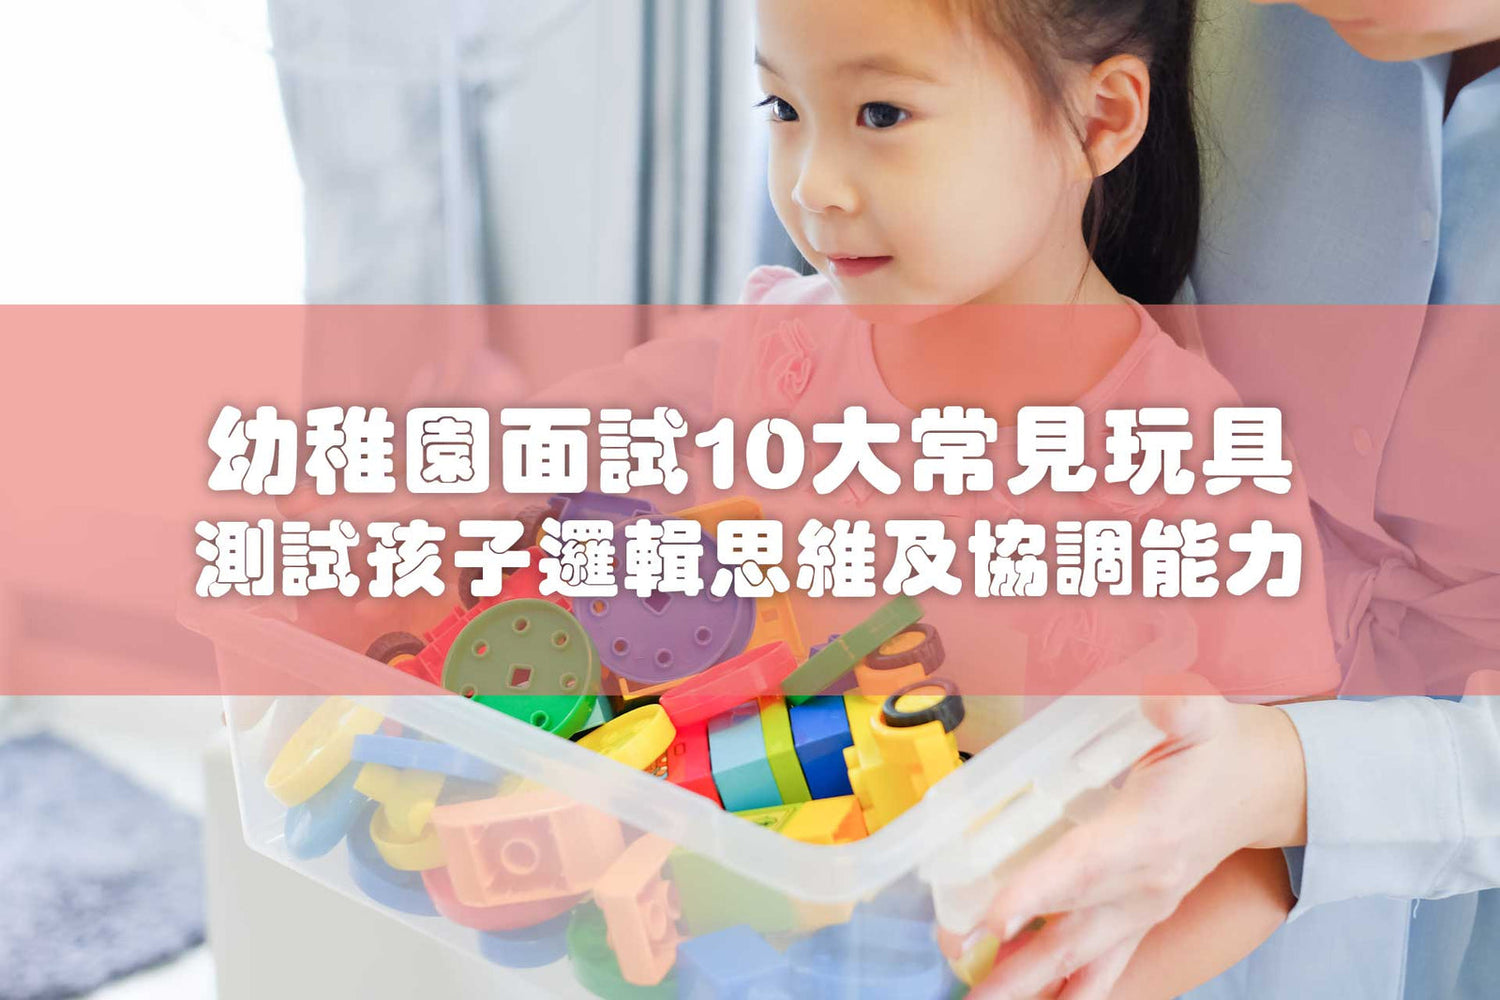 香港一般幼稚園都設有入學面試，面試期間不少幼稚園都會使用各式玩具作為一個測試工具，主要都是想觀察小朋友的手腳協調能力、邏輯能力、認知及自理能力。